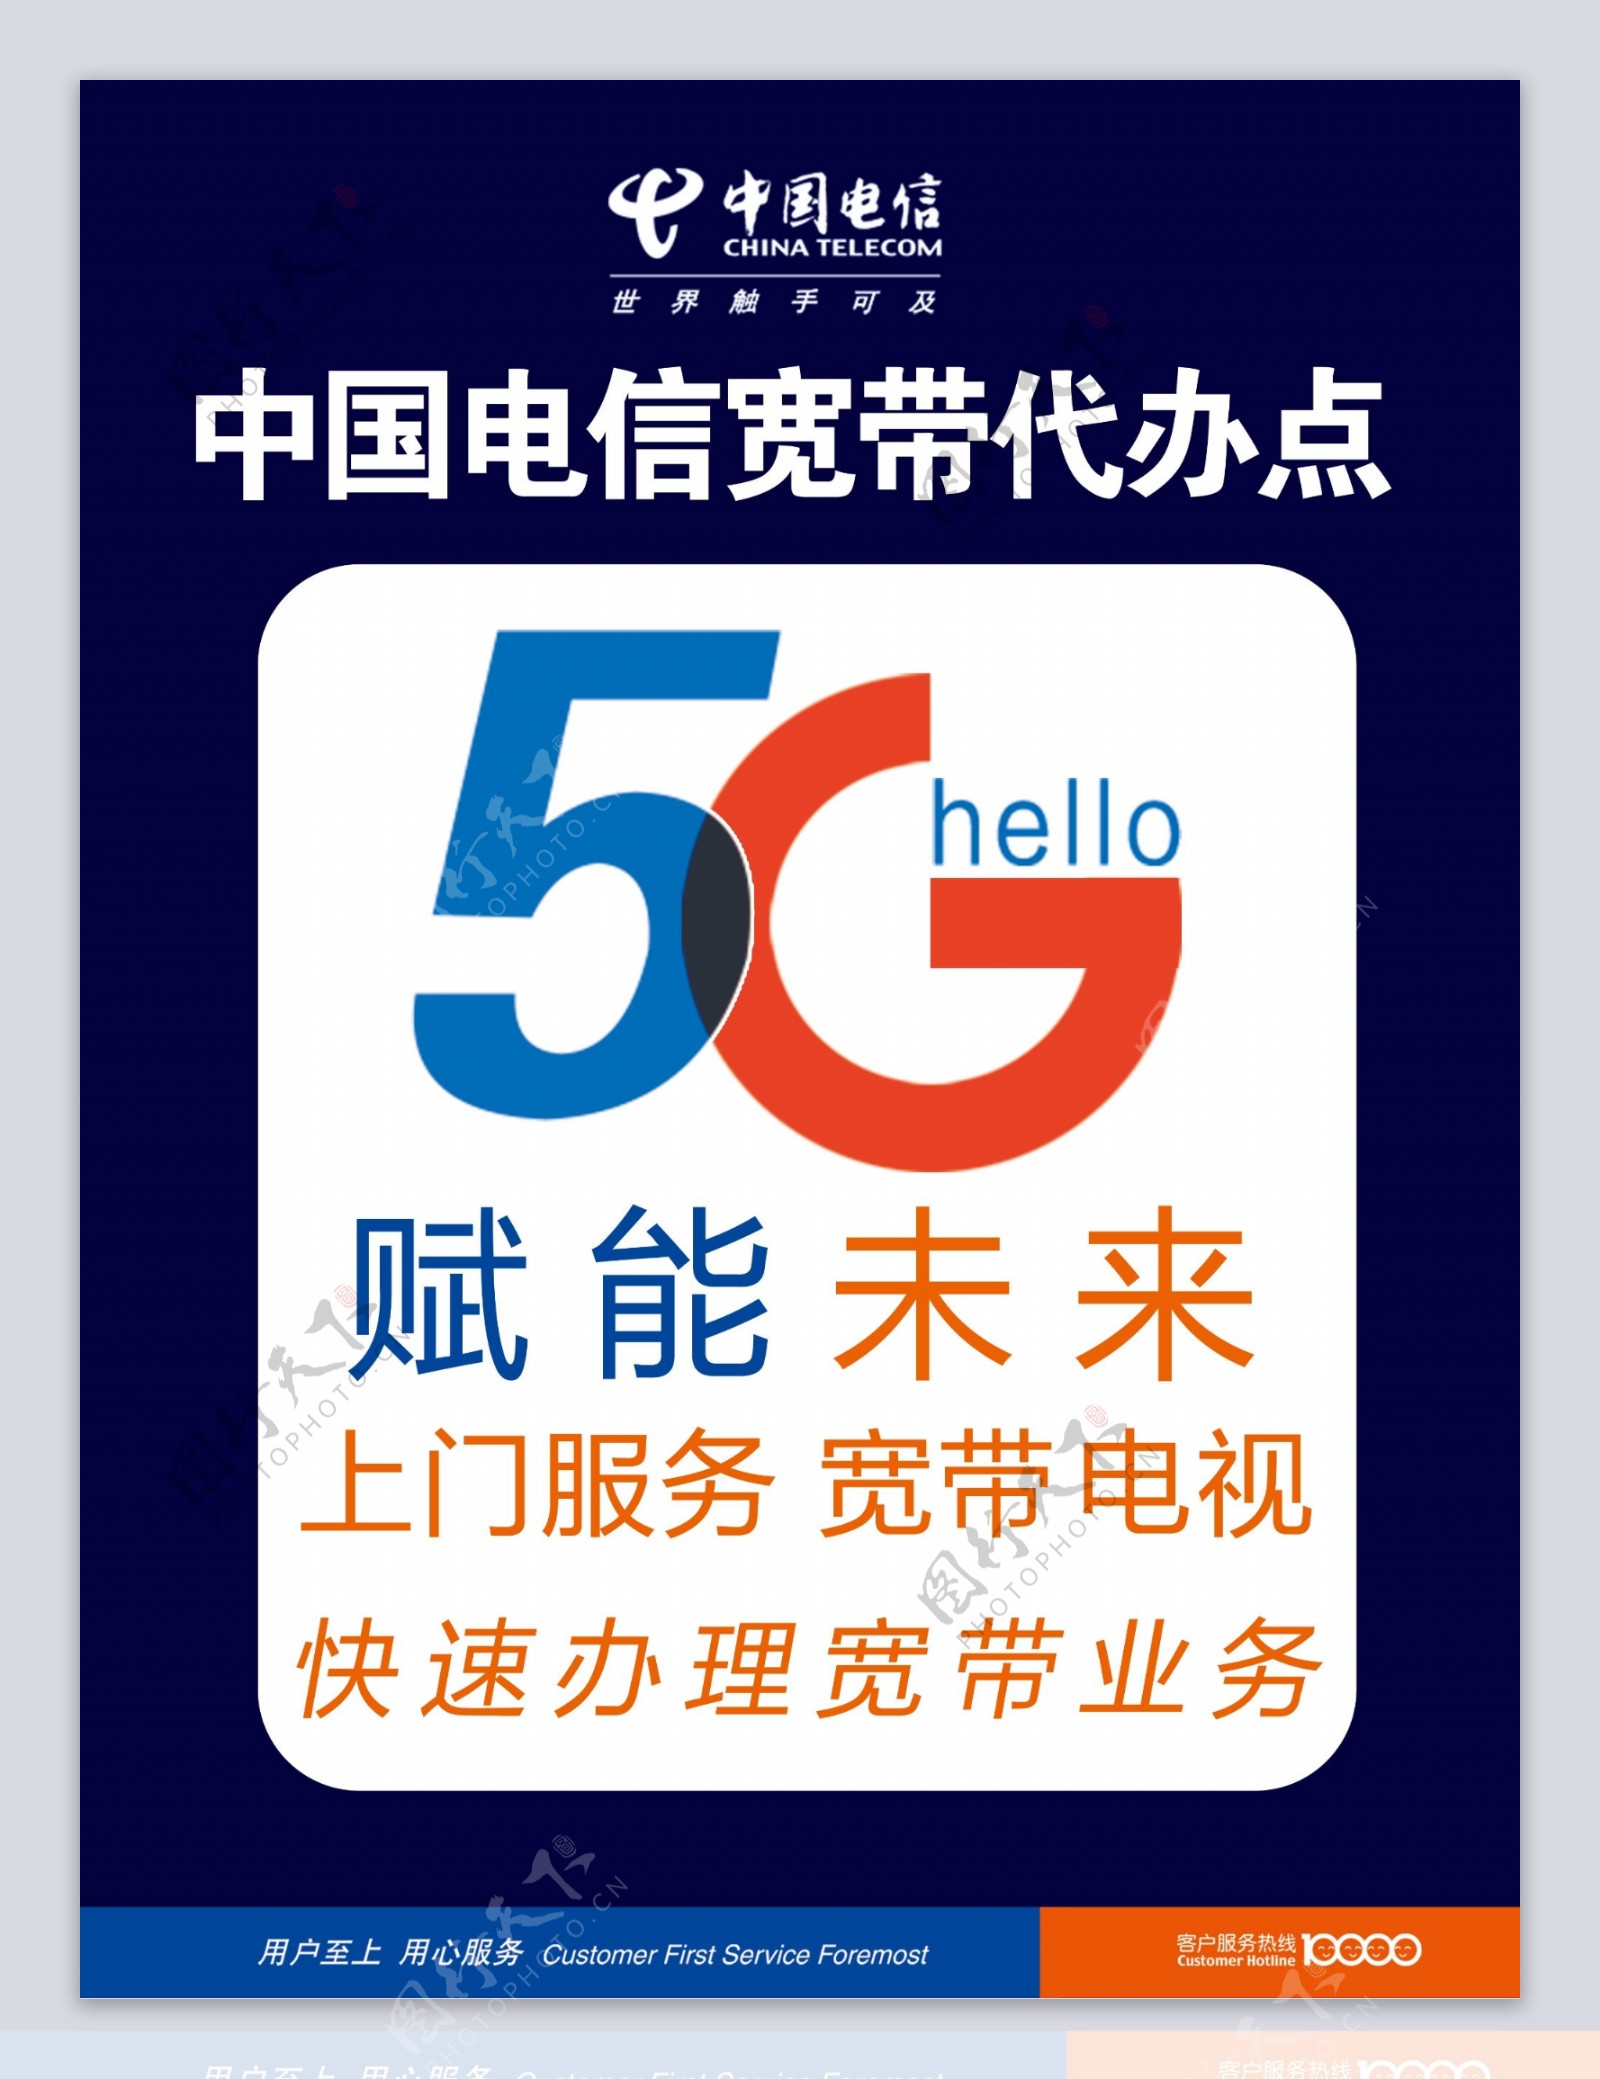 电信5G中国电信宽带代办点